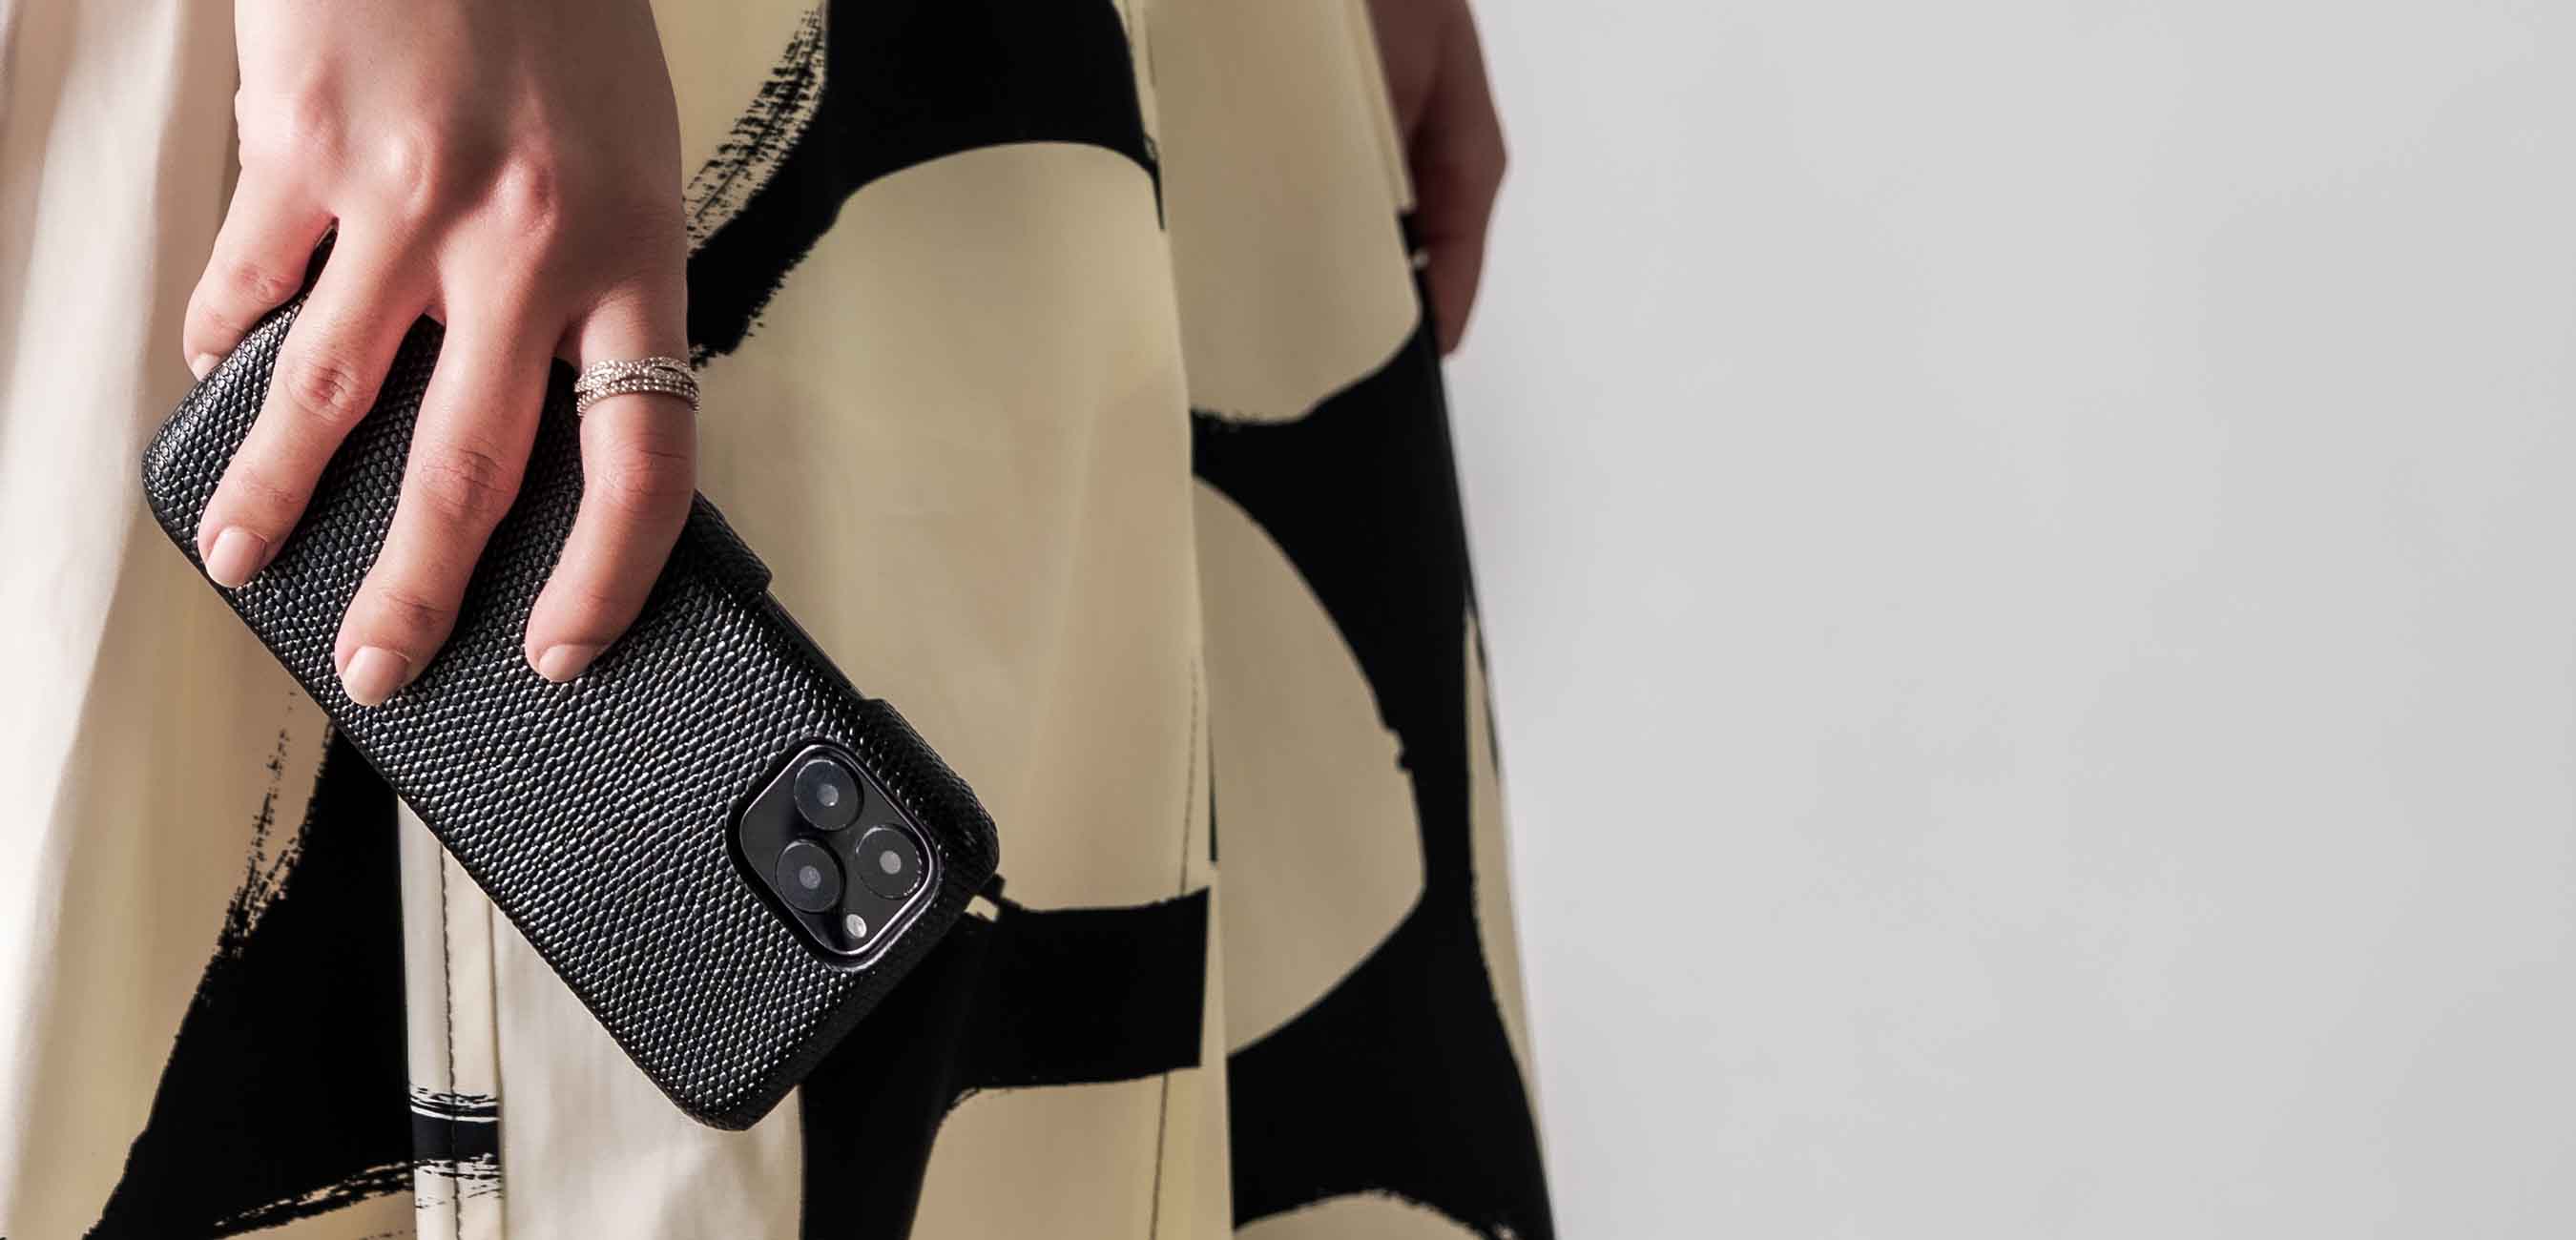 vivio Compatible iPhone 11 Pro Max Coque Classic Slim Stylish Cover avec Boutons Fente pour Carte Étui Portefeuille en Cuir Anti-Choc Protection Housse Ultra Mince Anti-Rayures Cover 